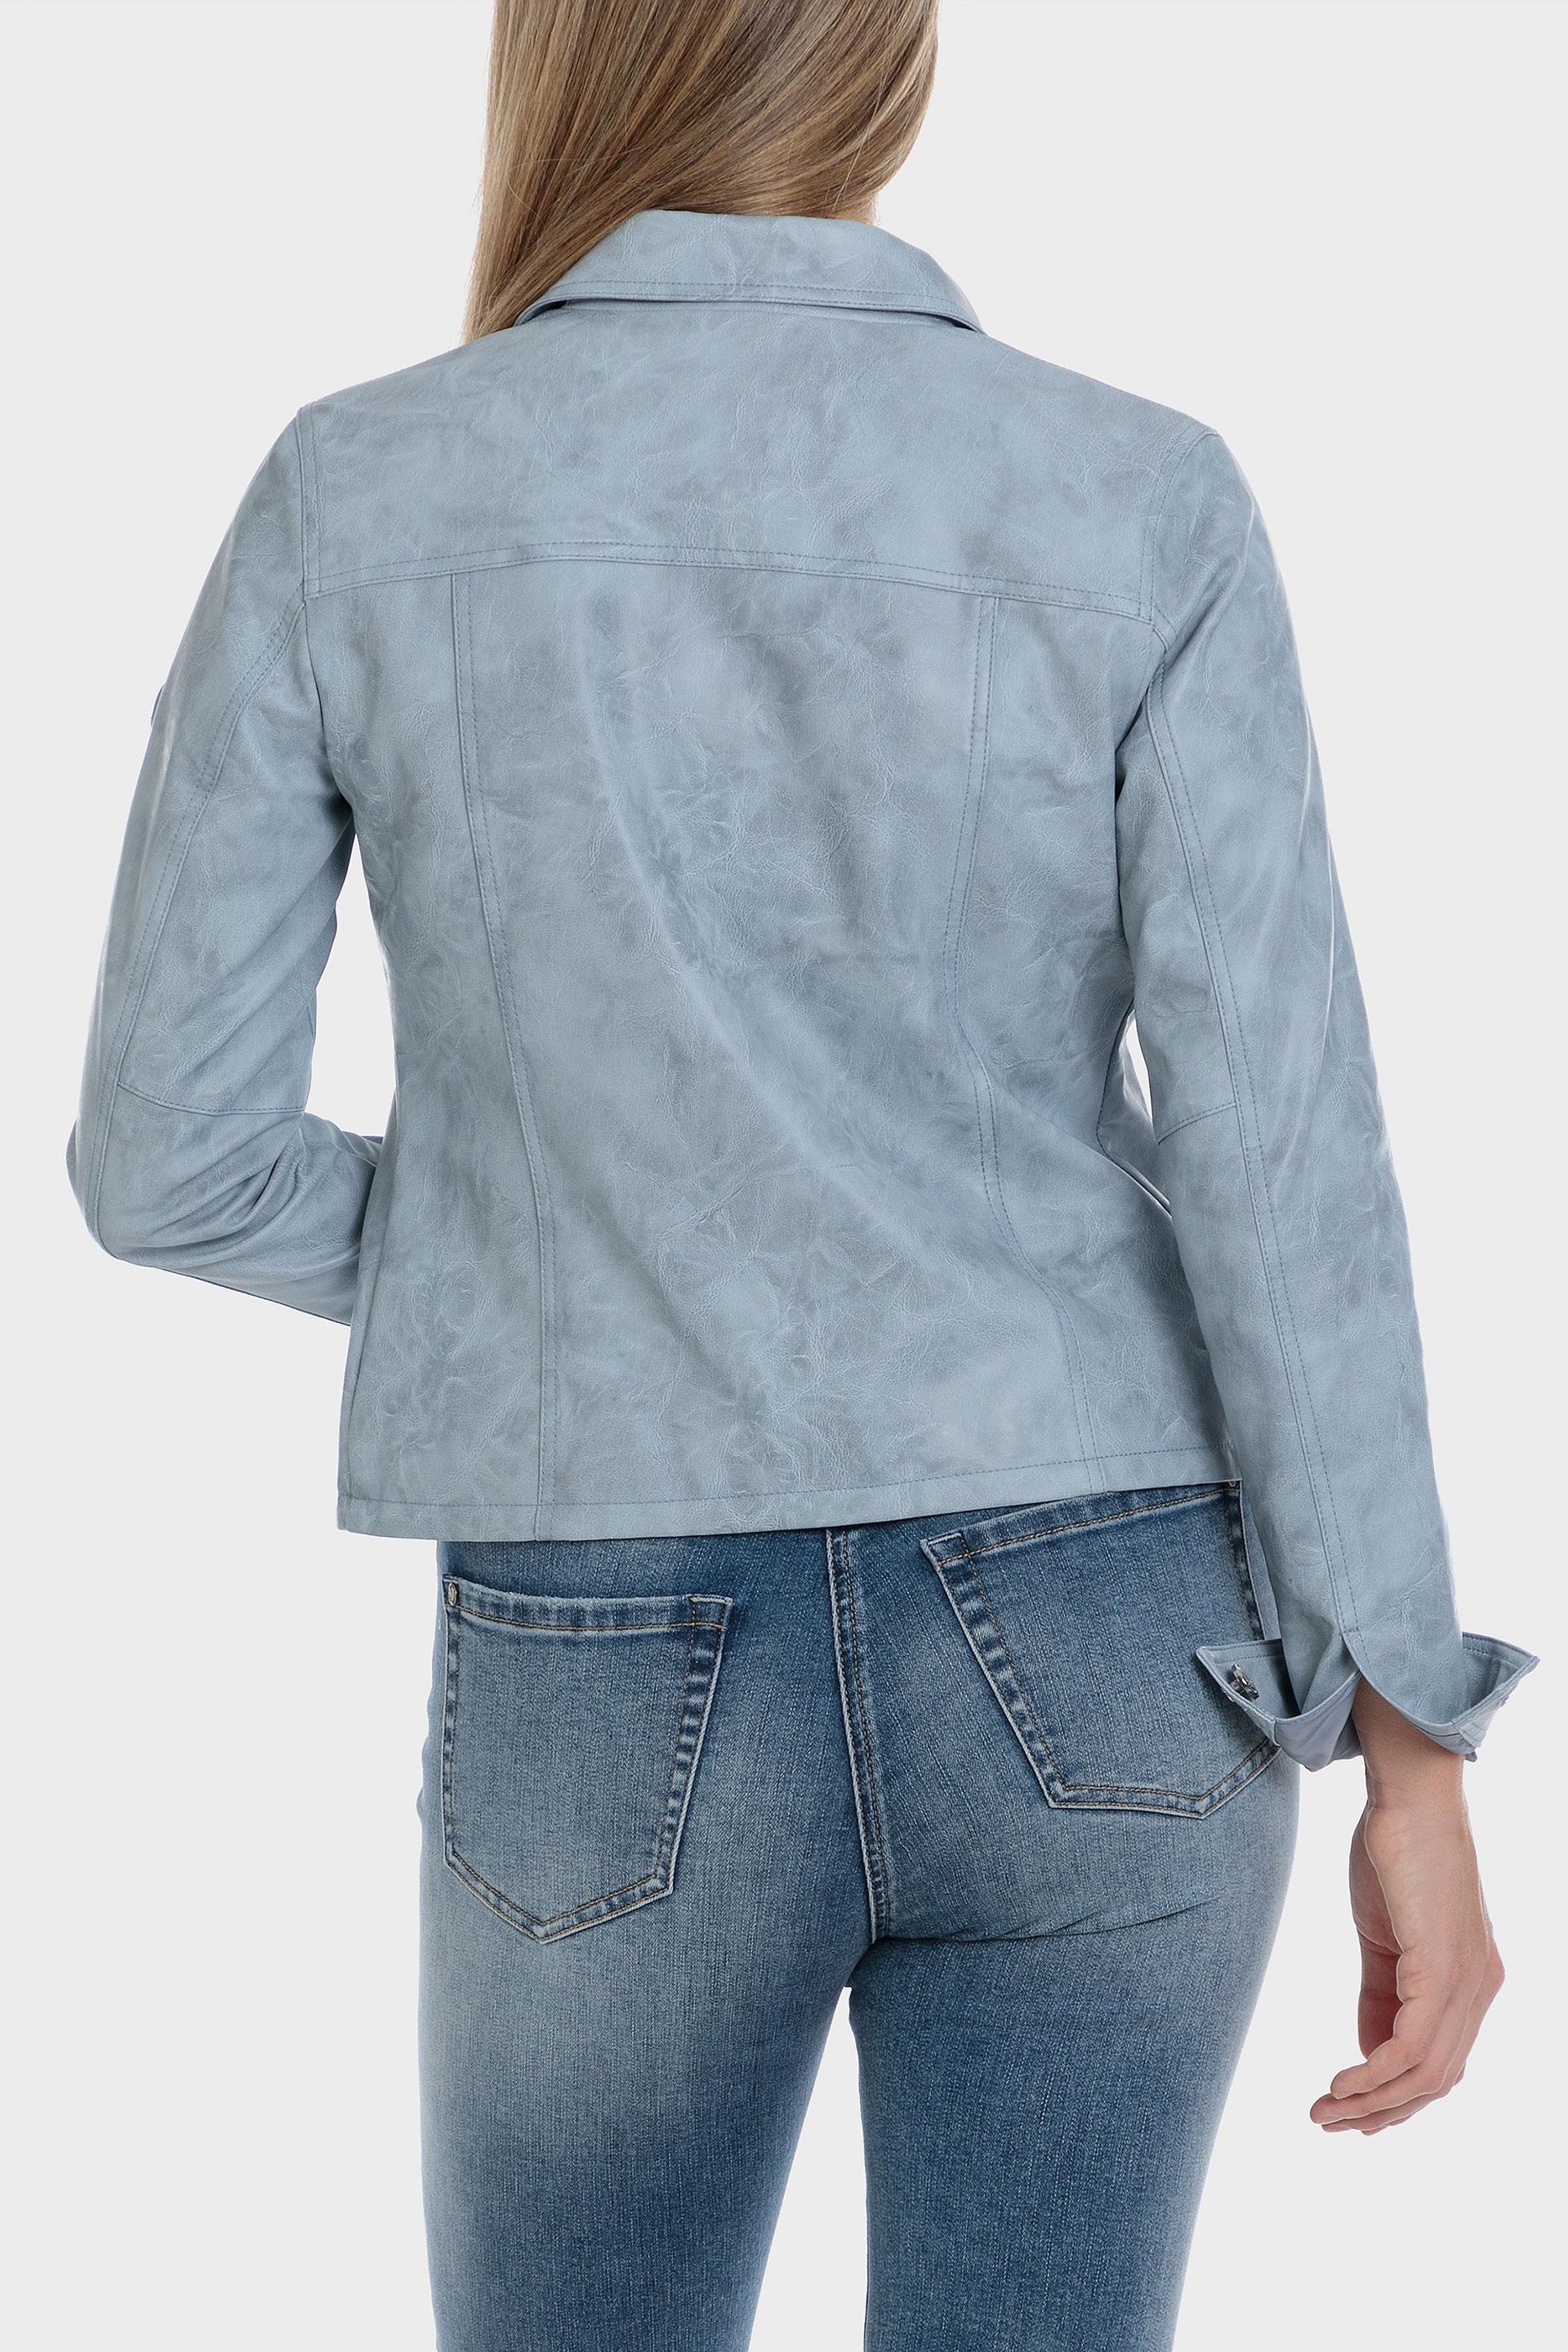 Punt Roma - Blue Long Sleeve Jacket